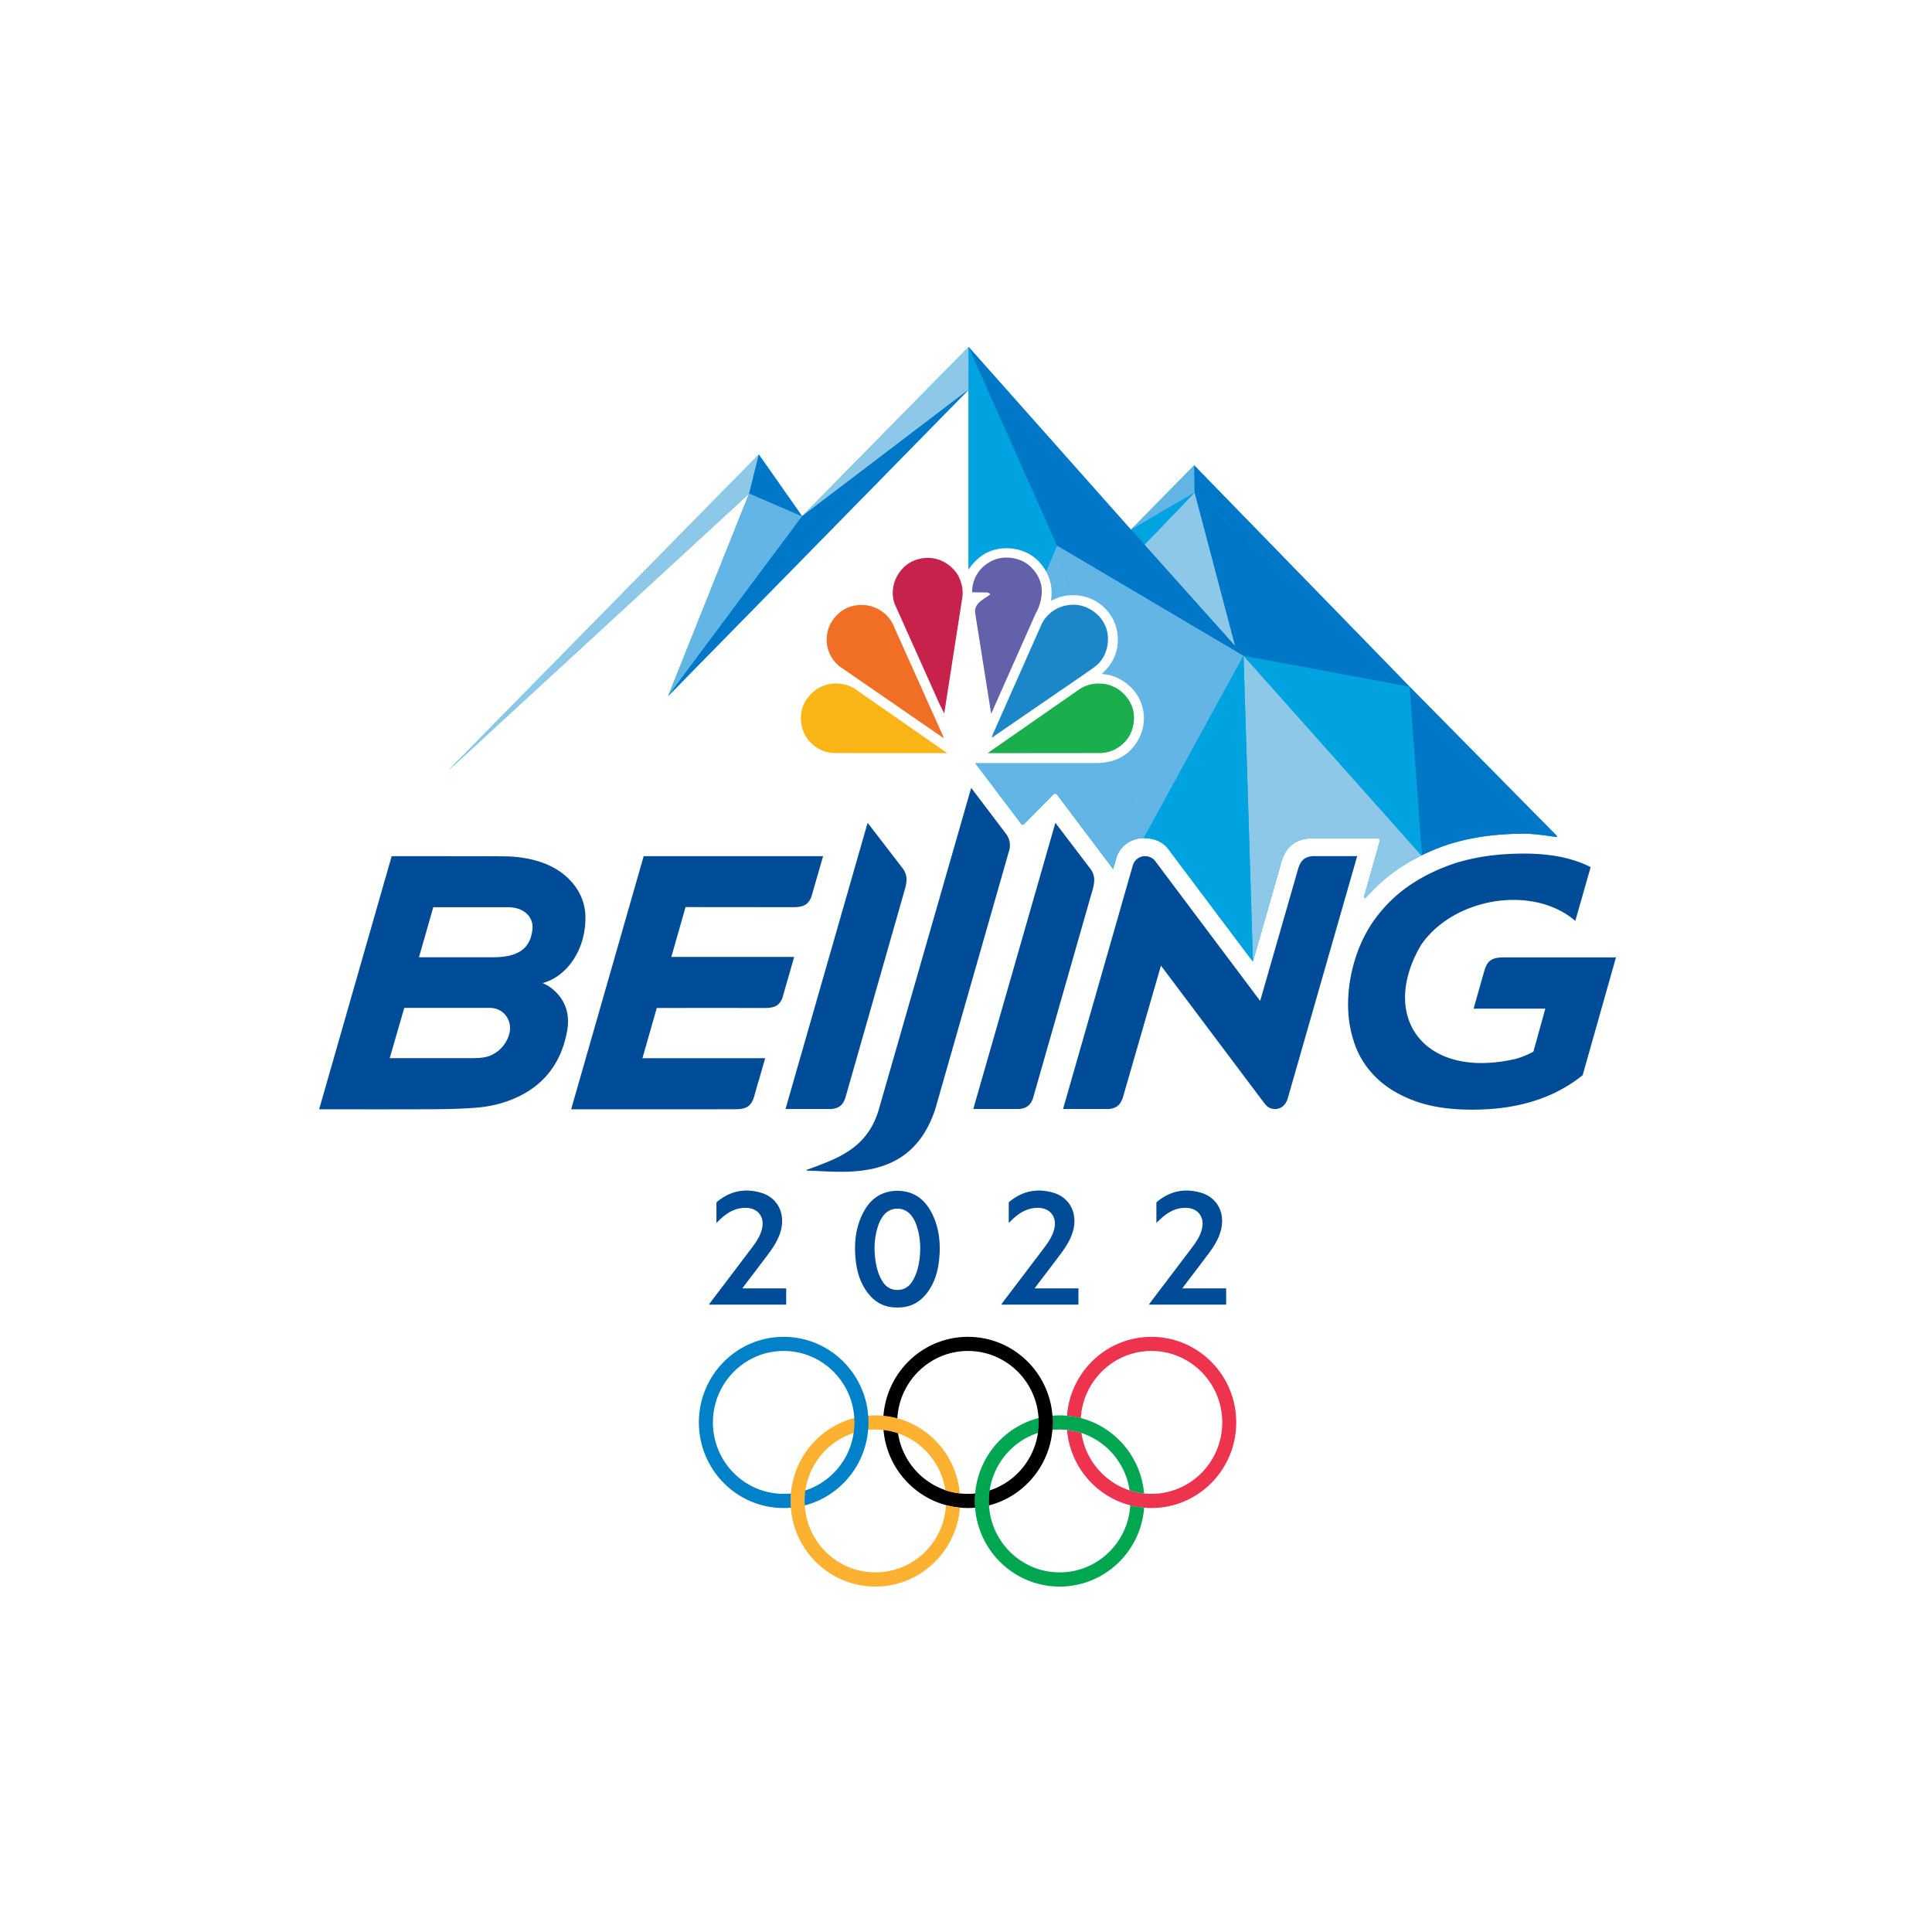 Shaun White schedule, Beijing Olympics 2022: How to watch men's